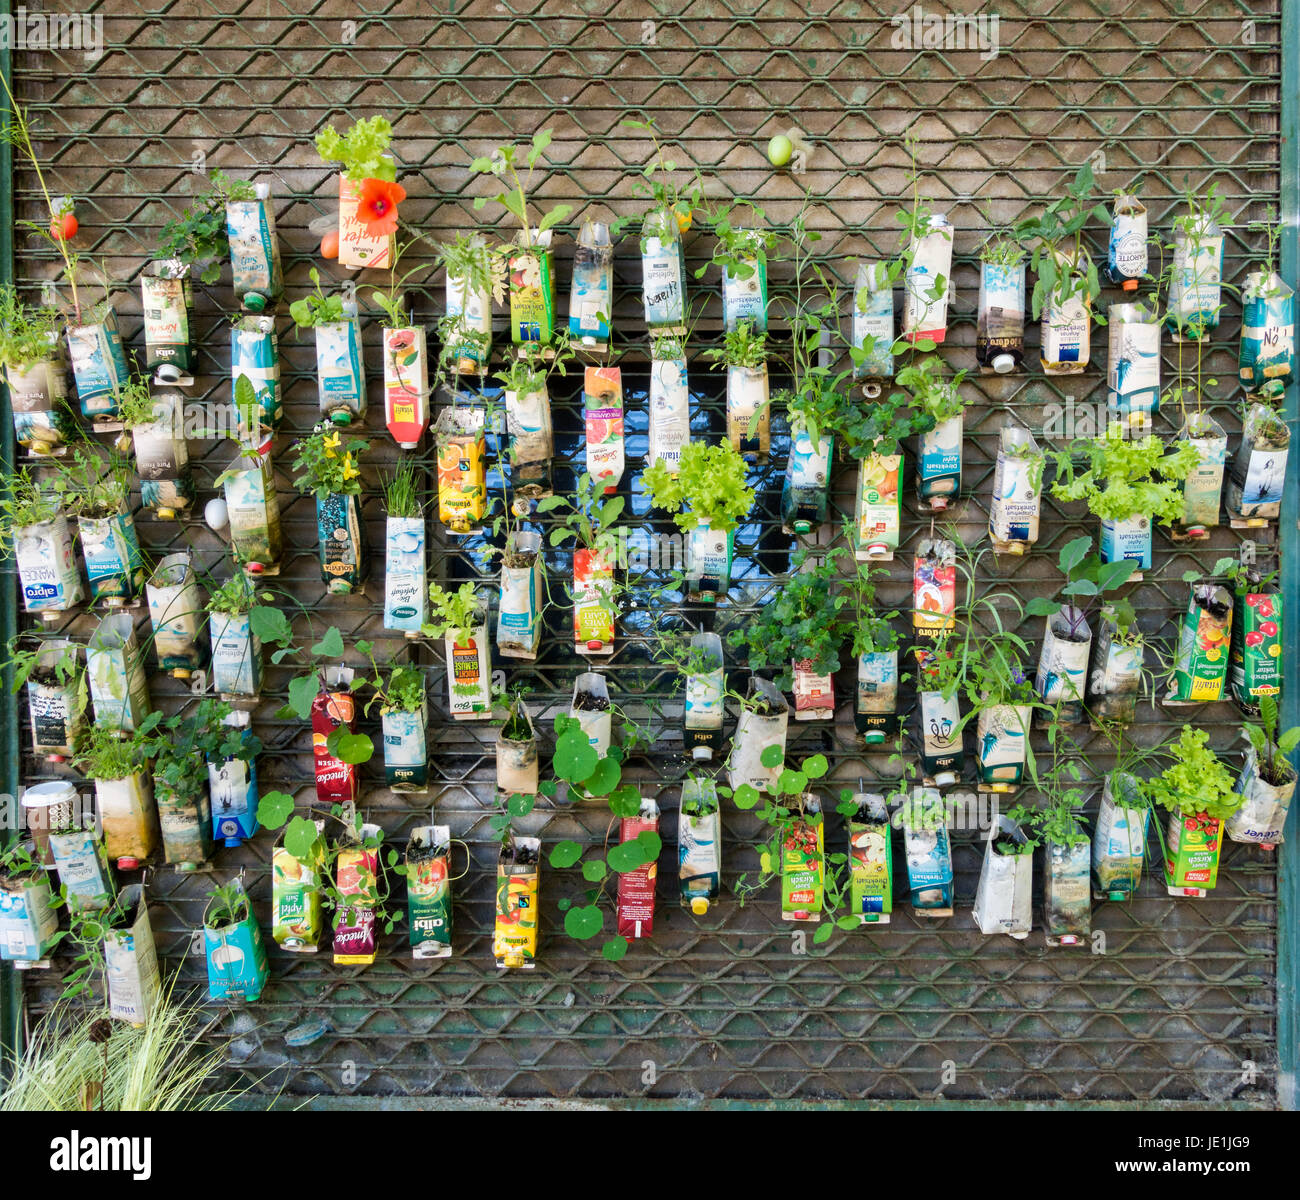 Berlin, Deutschland - Juni 2, 2017: alte Getränkekartons als blumentöpfe verwendet. Urban guerilla gardening Hintergrund in Berlin City. Stockfoto